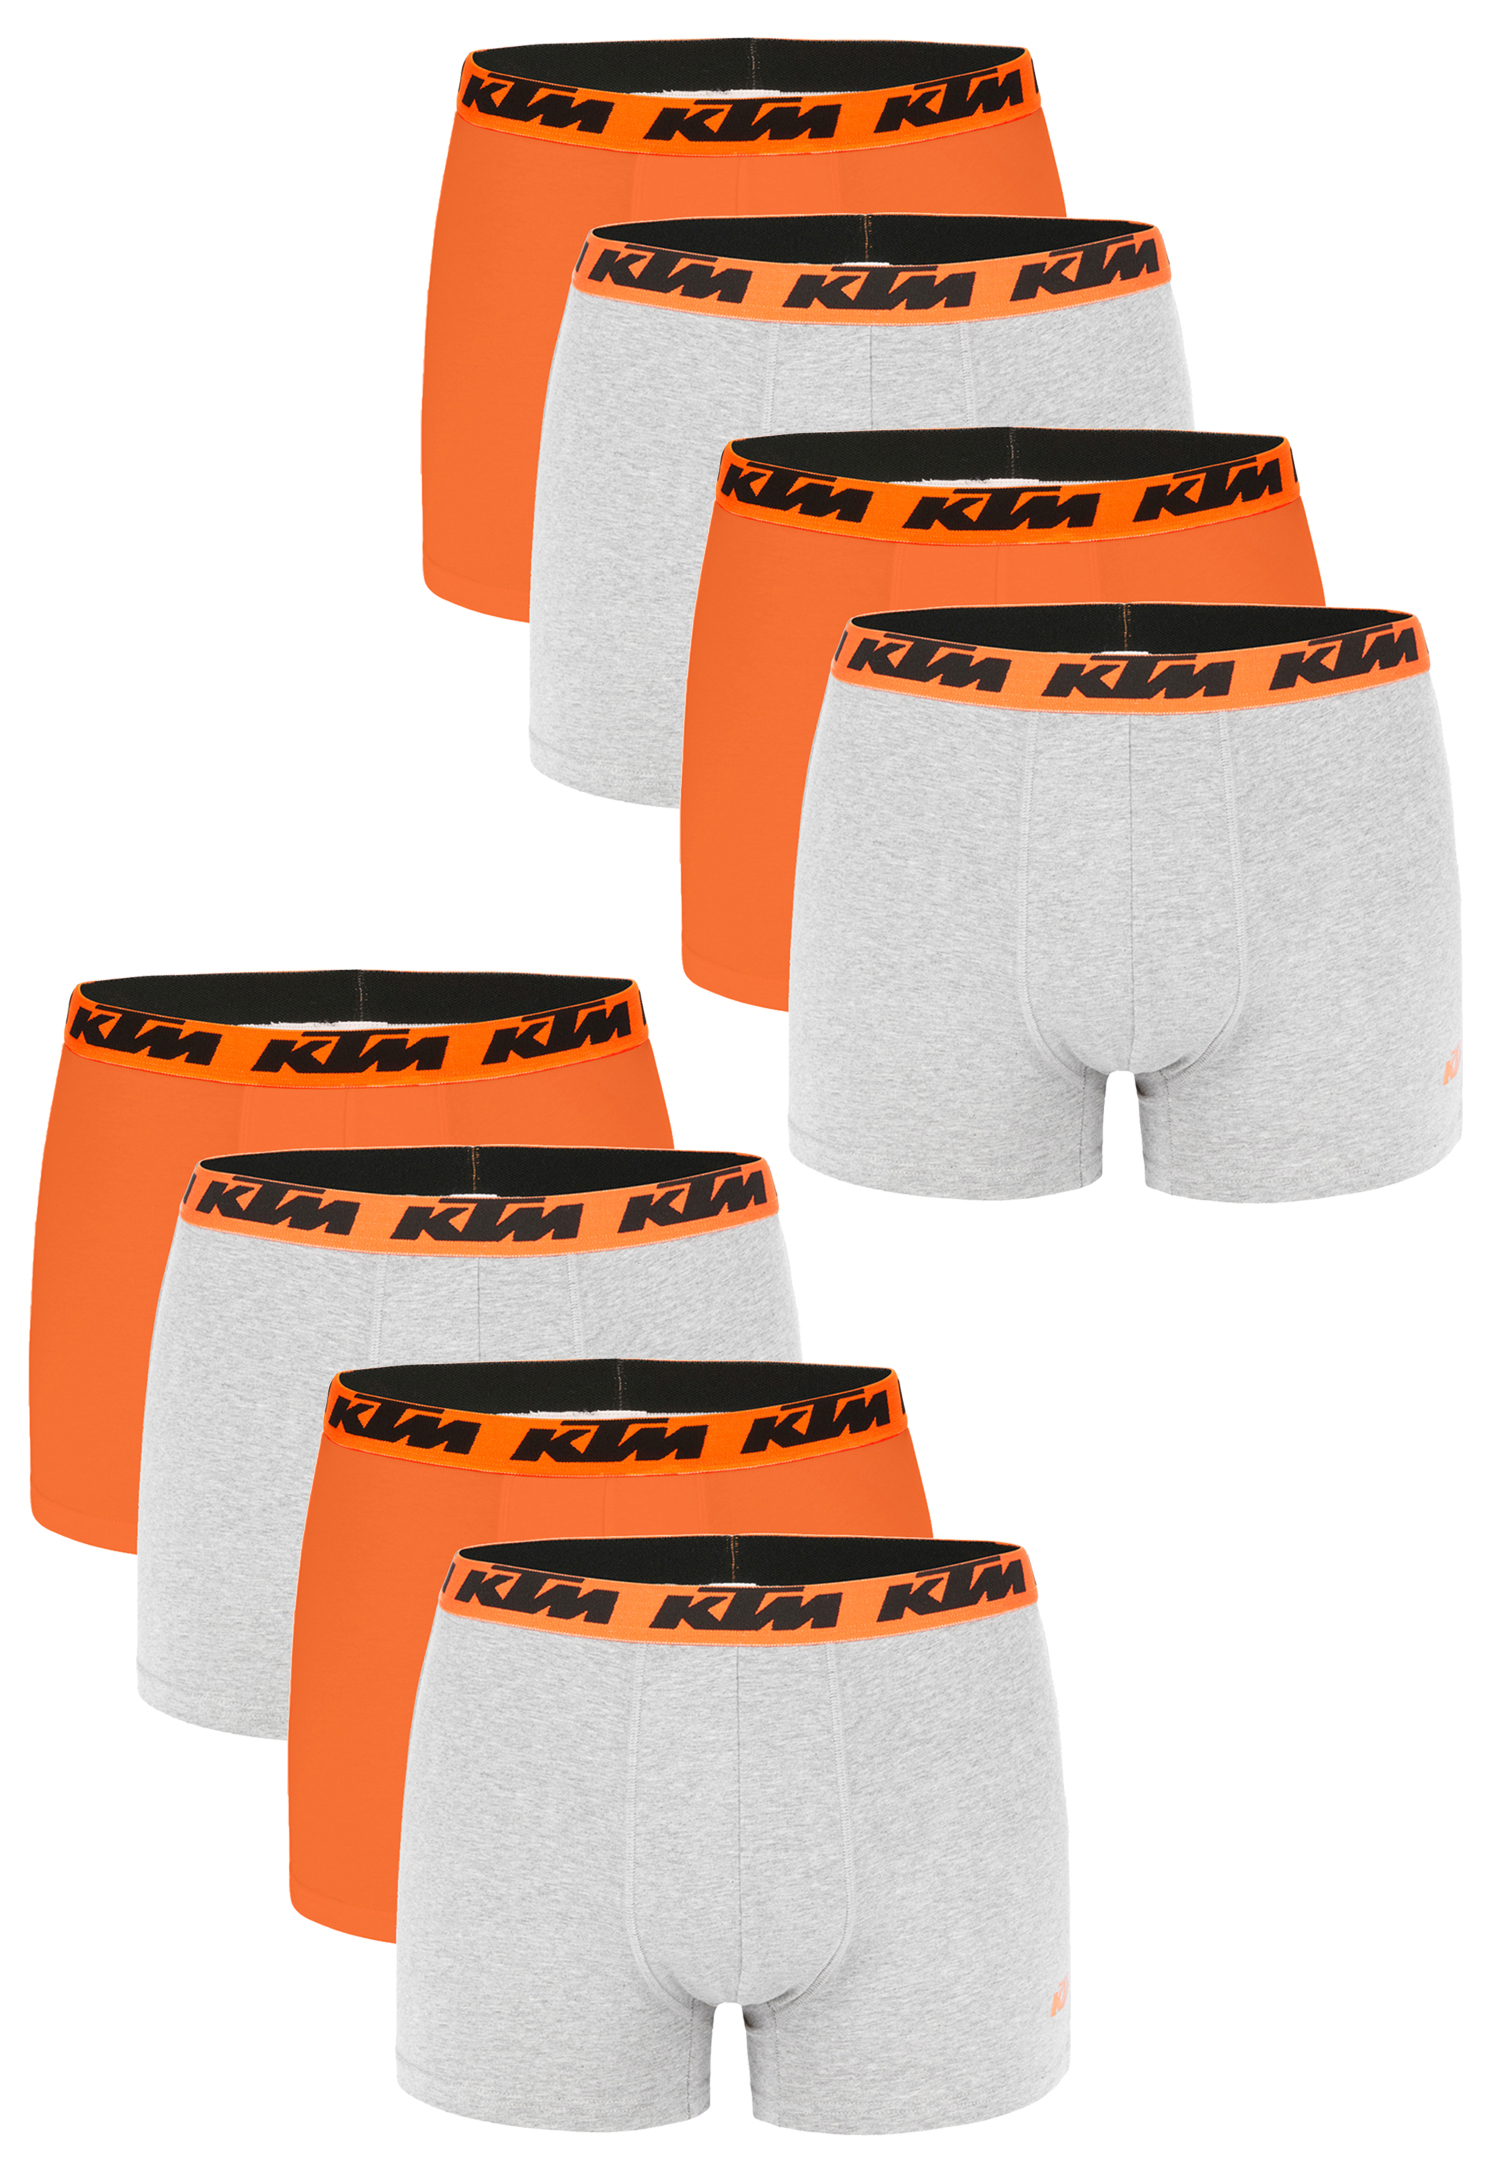 KTM Boxer Men Herren Boxershorts Pant Unterwäsche 4 er Multipack, Farbe:Light Grey / Orange2, Bekleidungsgröße:XL